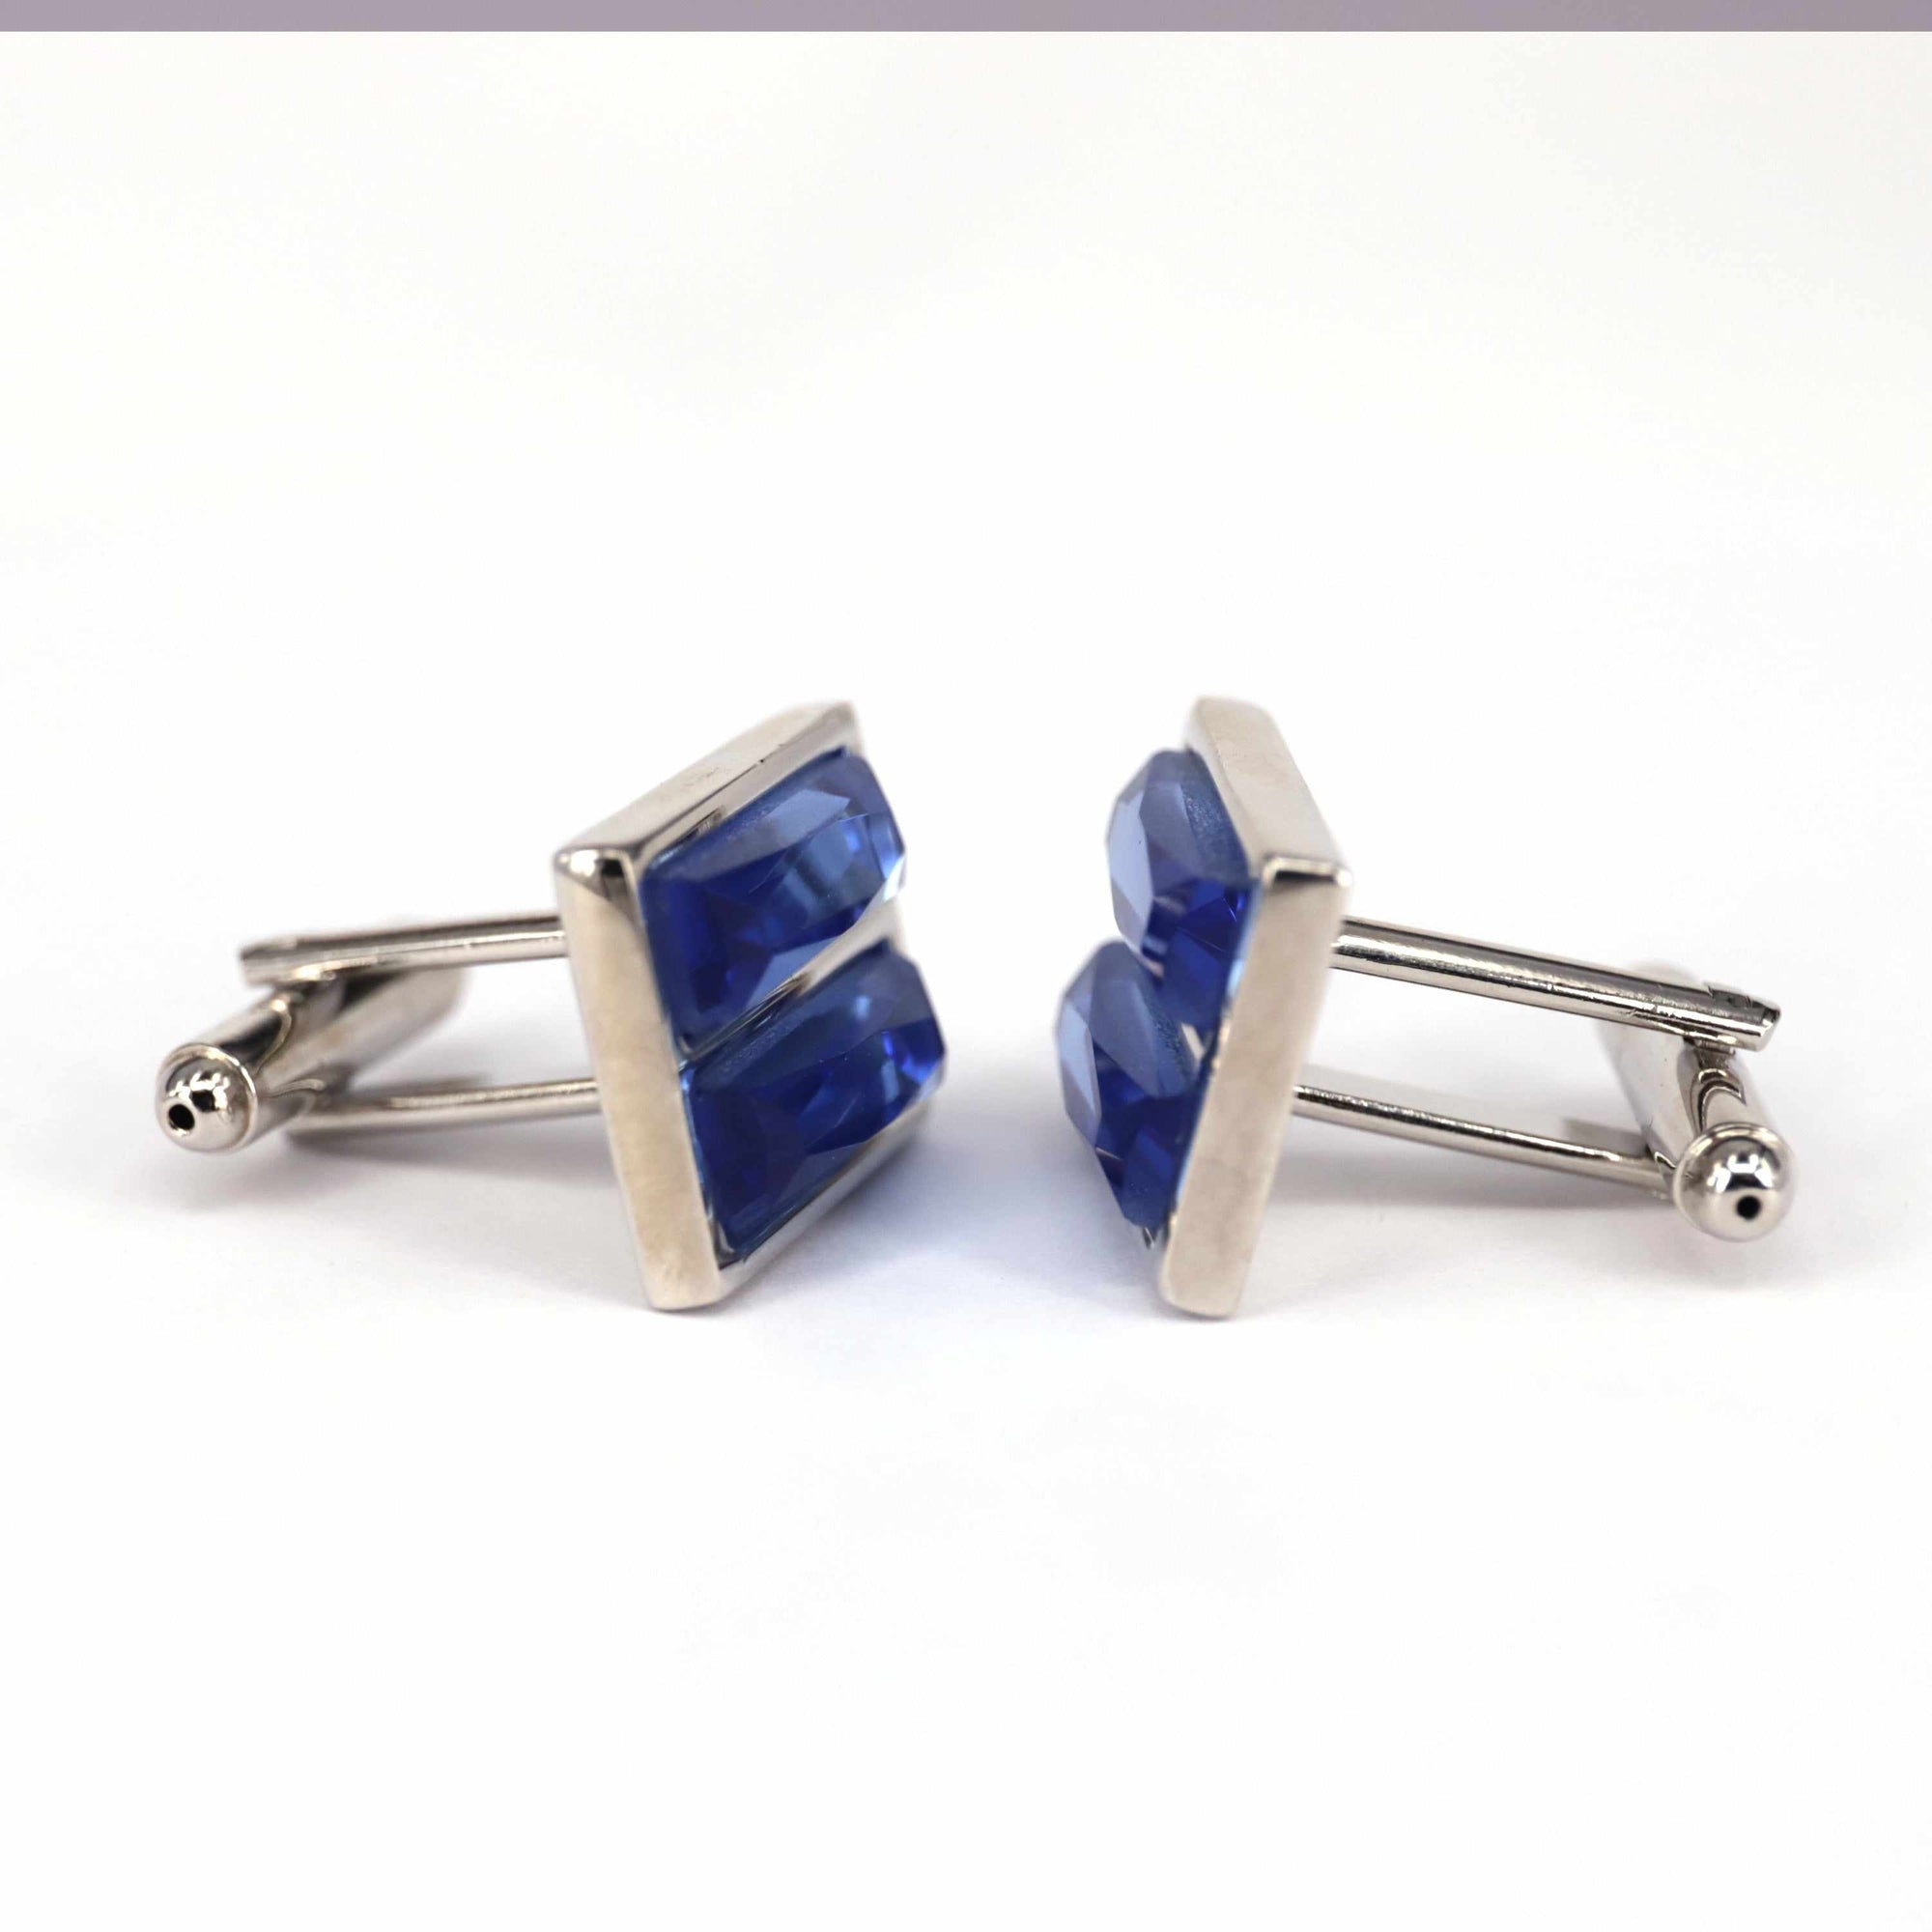 Rectangular Blue Fiber Glass Cufflinks-Cufflinks.com.sg